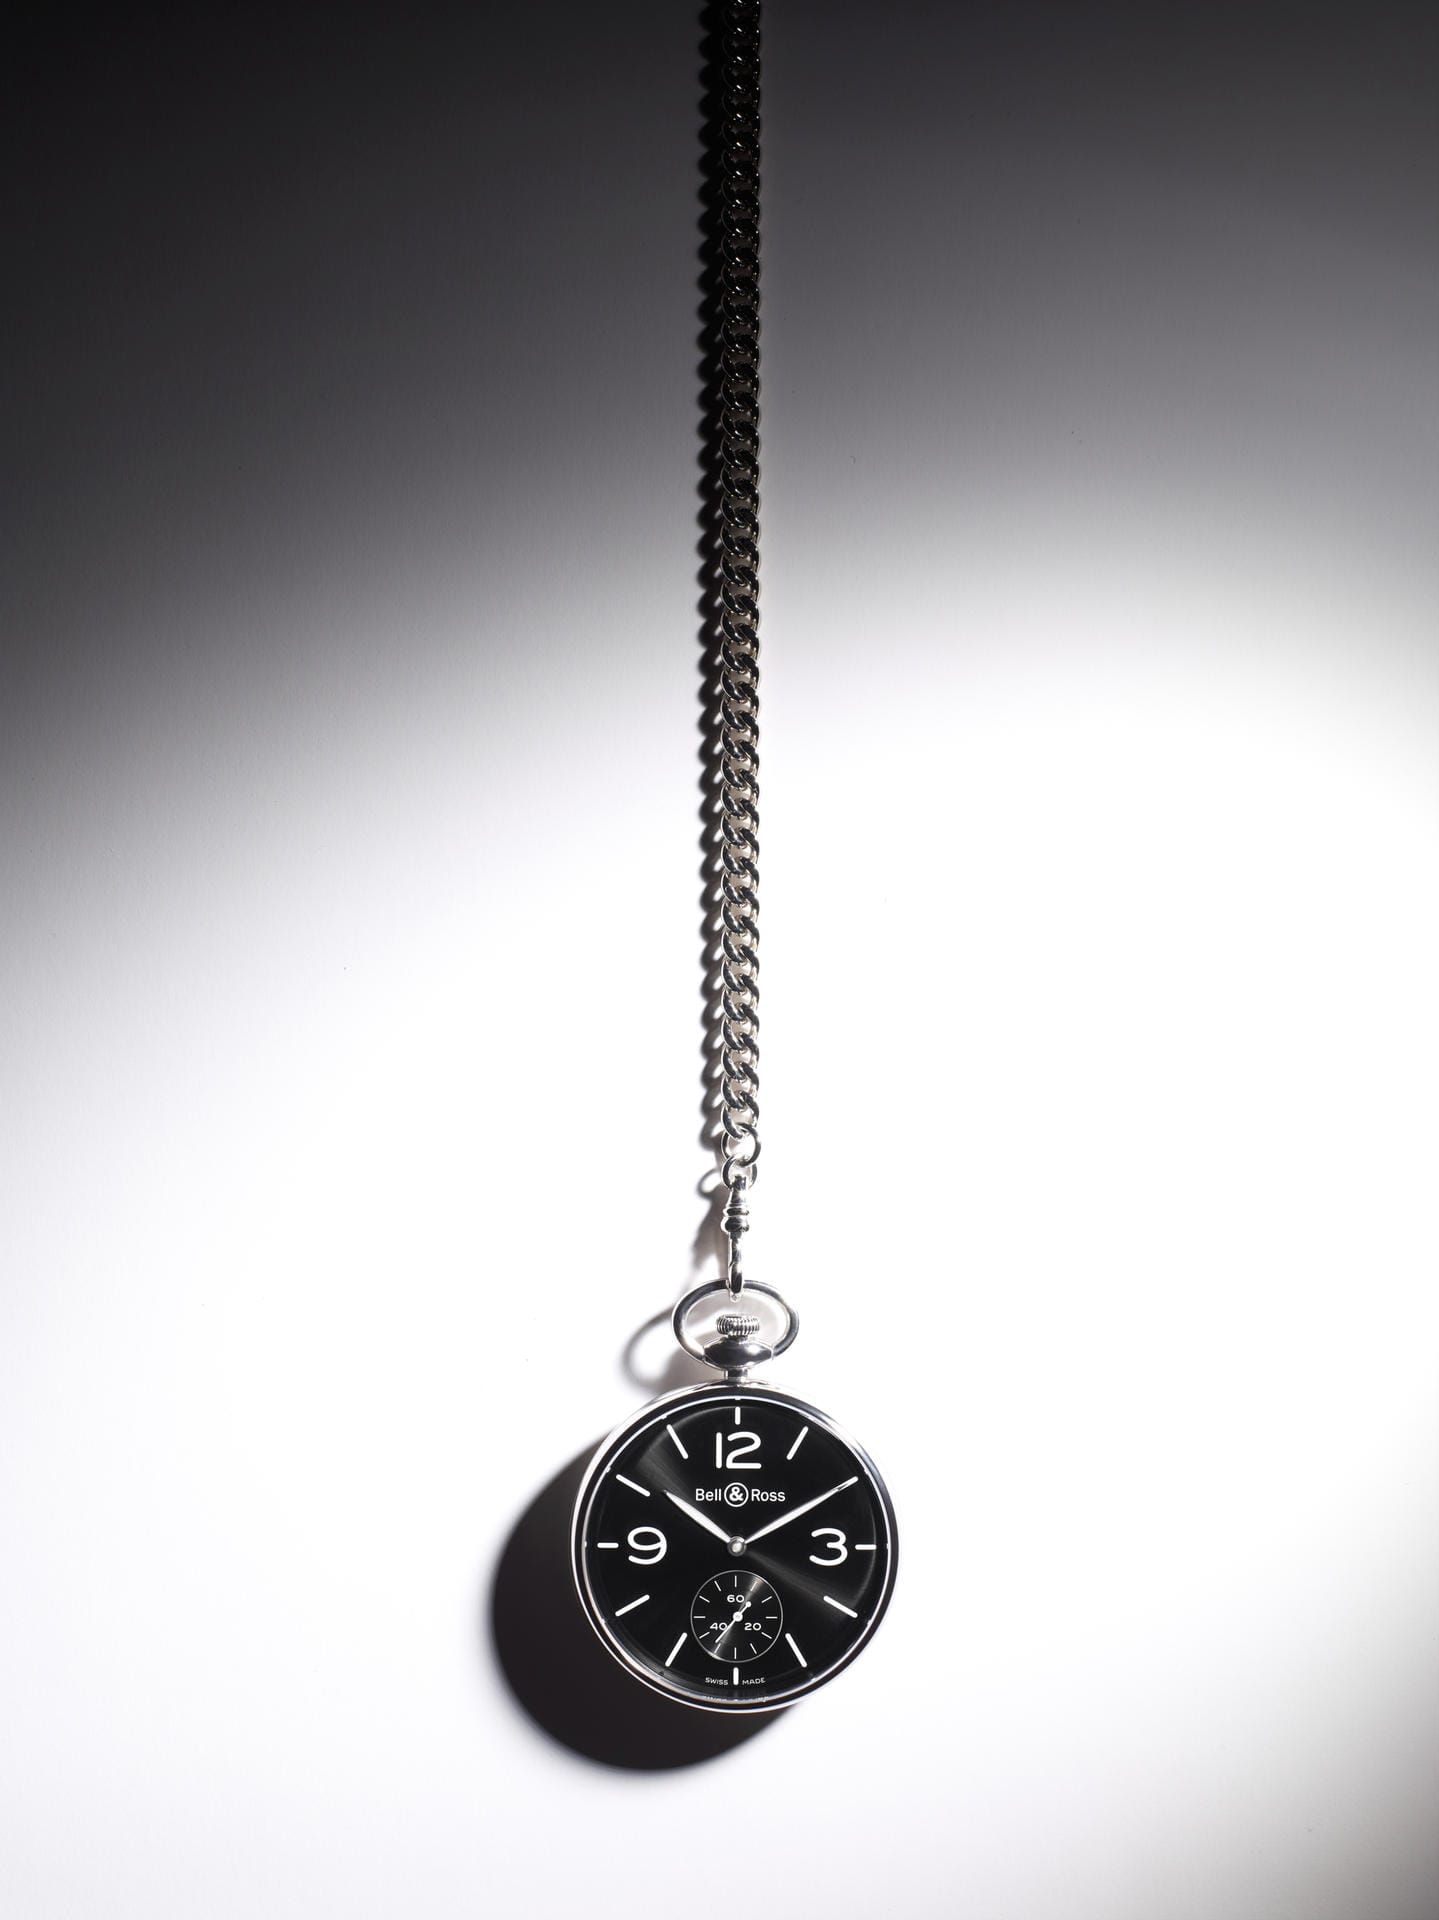 Die nach dem Vorbild der Taschenuhren der 1910-er-Jahre gestaltete PW1 von Bell & Ross ist eine Hommage an die Zeitmesser, die in den ersten Stunden der Luftfahrt zum Einsatz kamen. Das Uhrwerk ist mechanisch, mit manuellem Aufzug. Das Gehäuse ist aus poliertem Stahl und hat einen Durchmesser von 49 Millimetern.